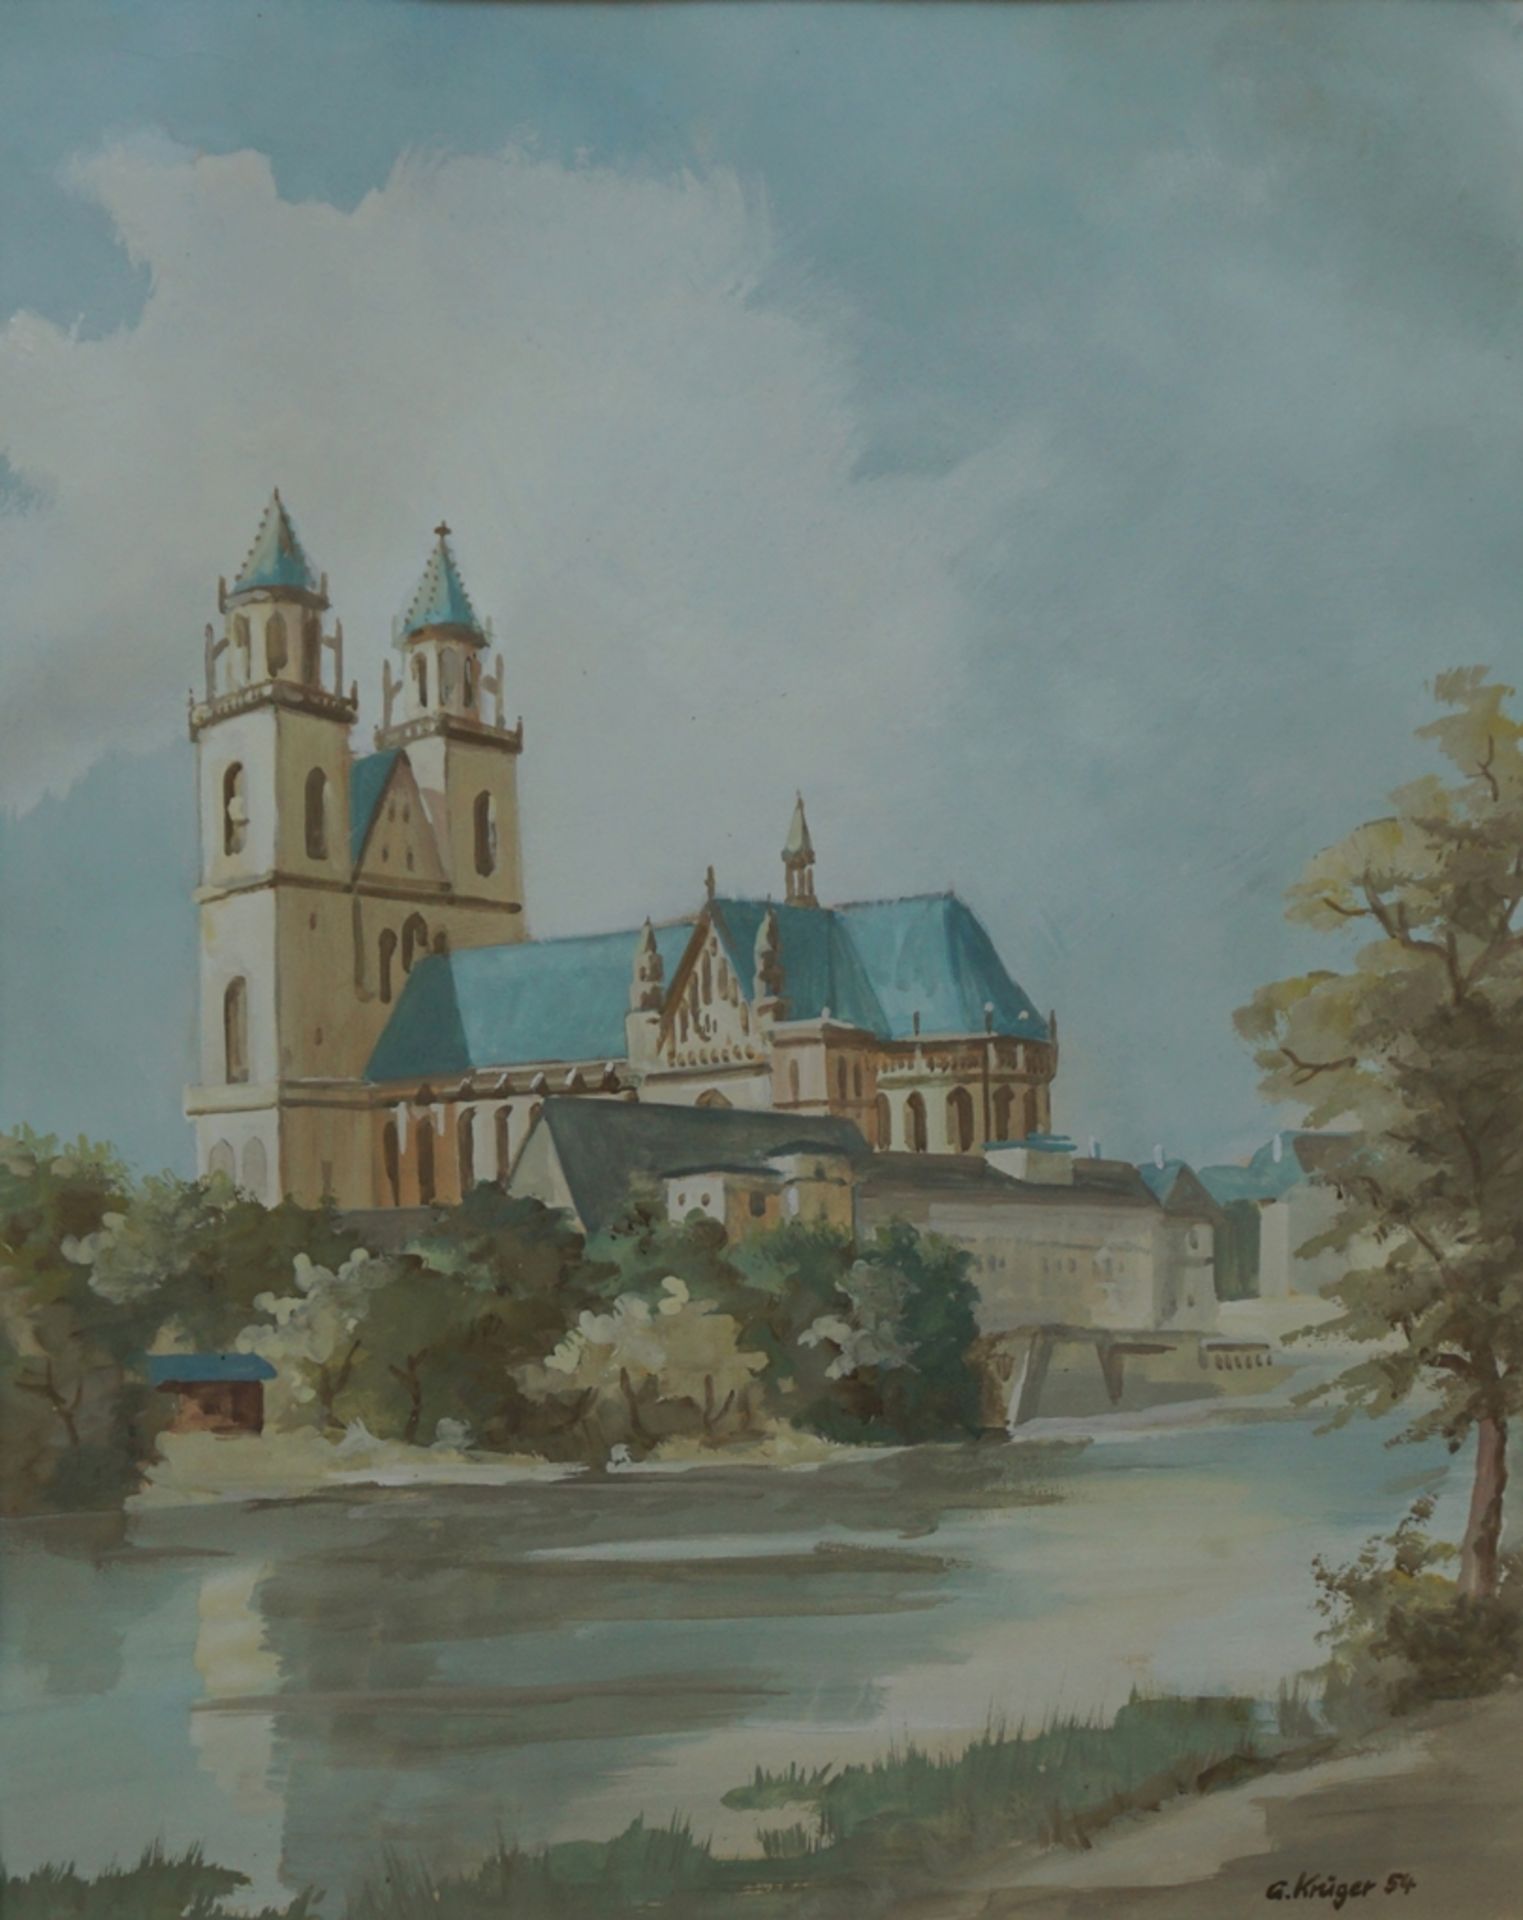 G. Krüger, "Blick zum Magdeburger Dom", 1954, Aquarell